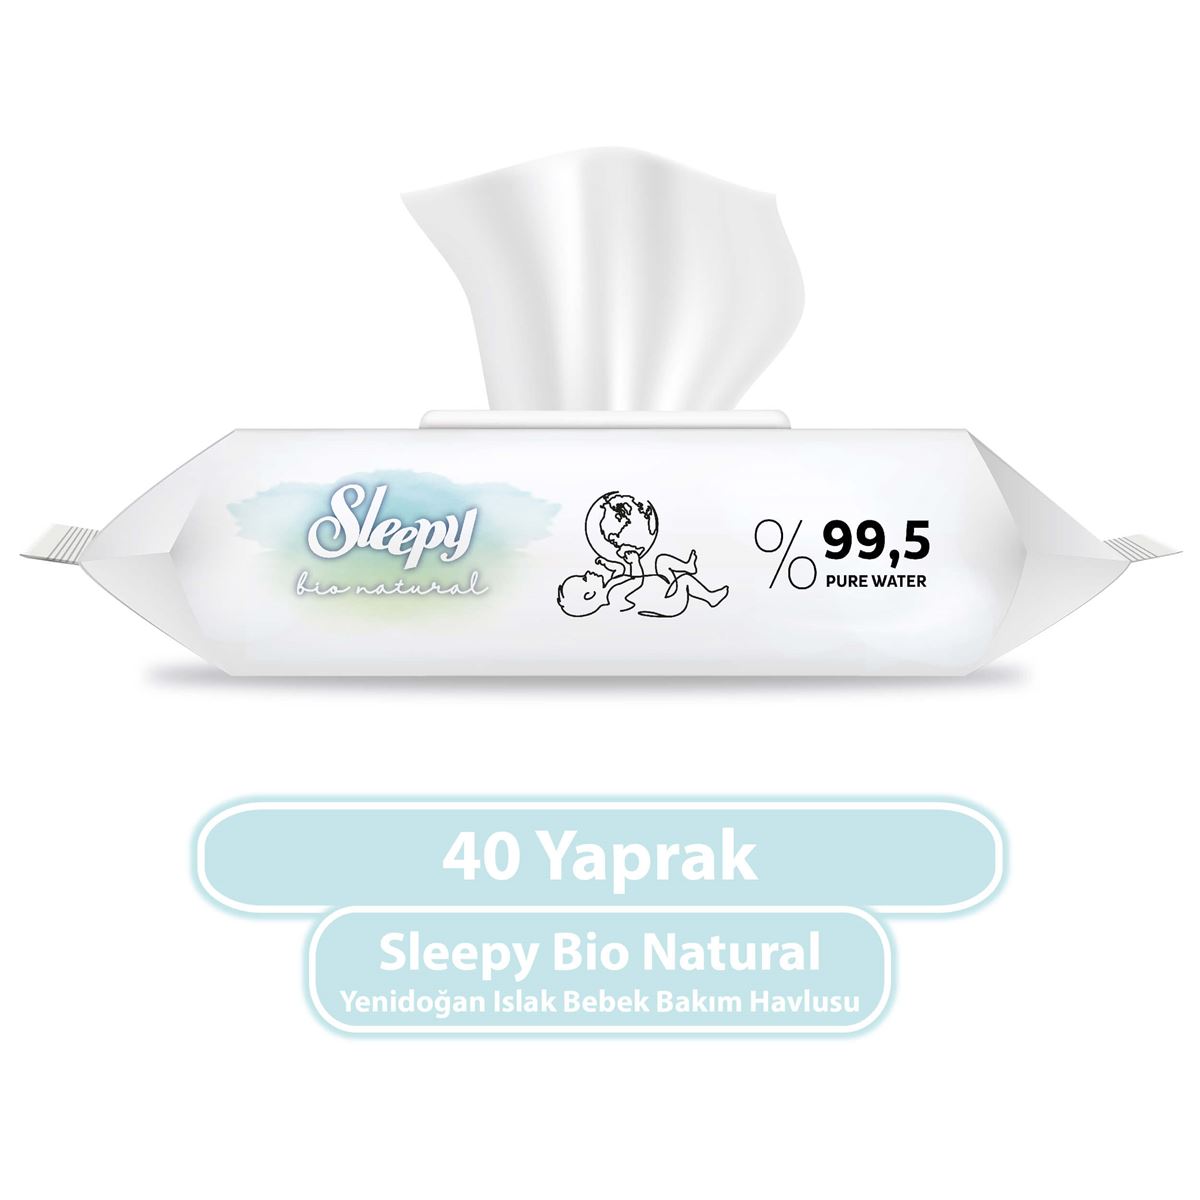 Sleepy Bio Natural Yenidoğan Islak Bebek Bakım Havlusu 40 Yaprak